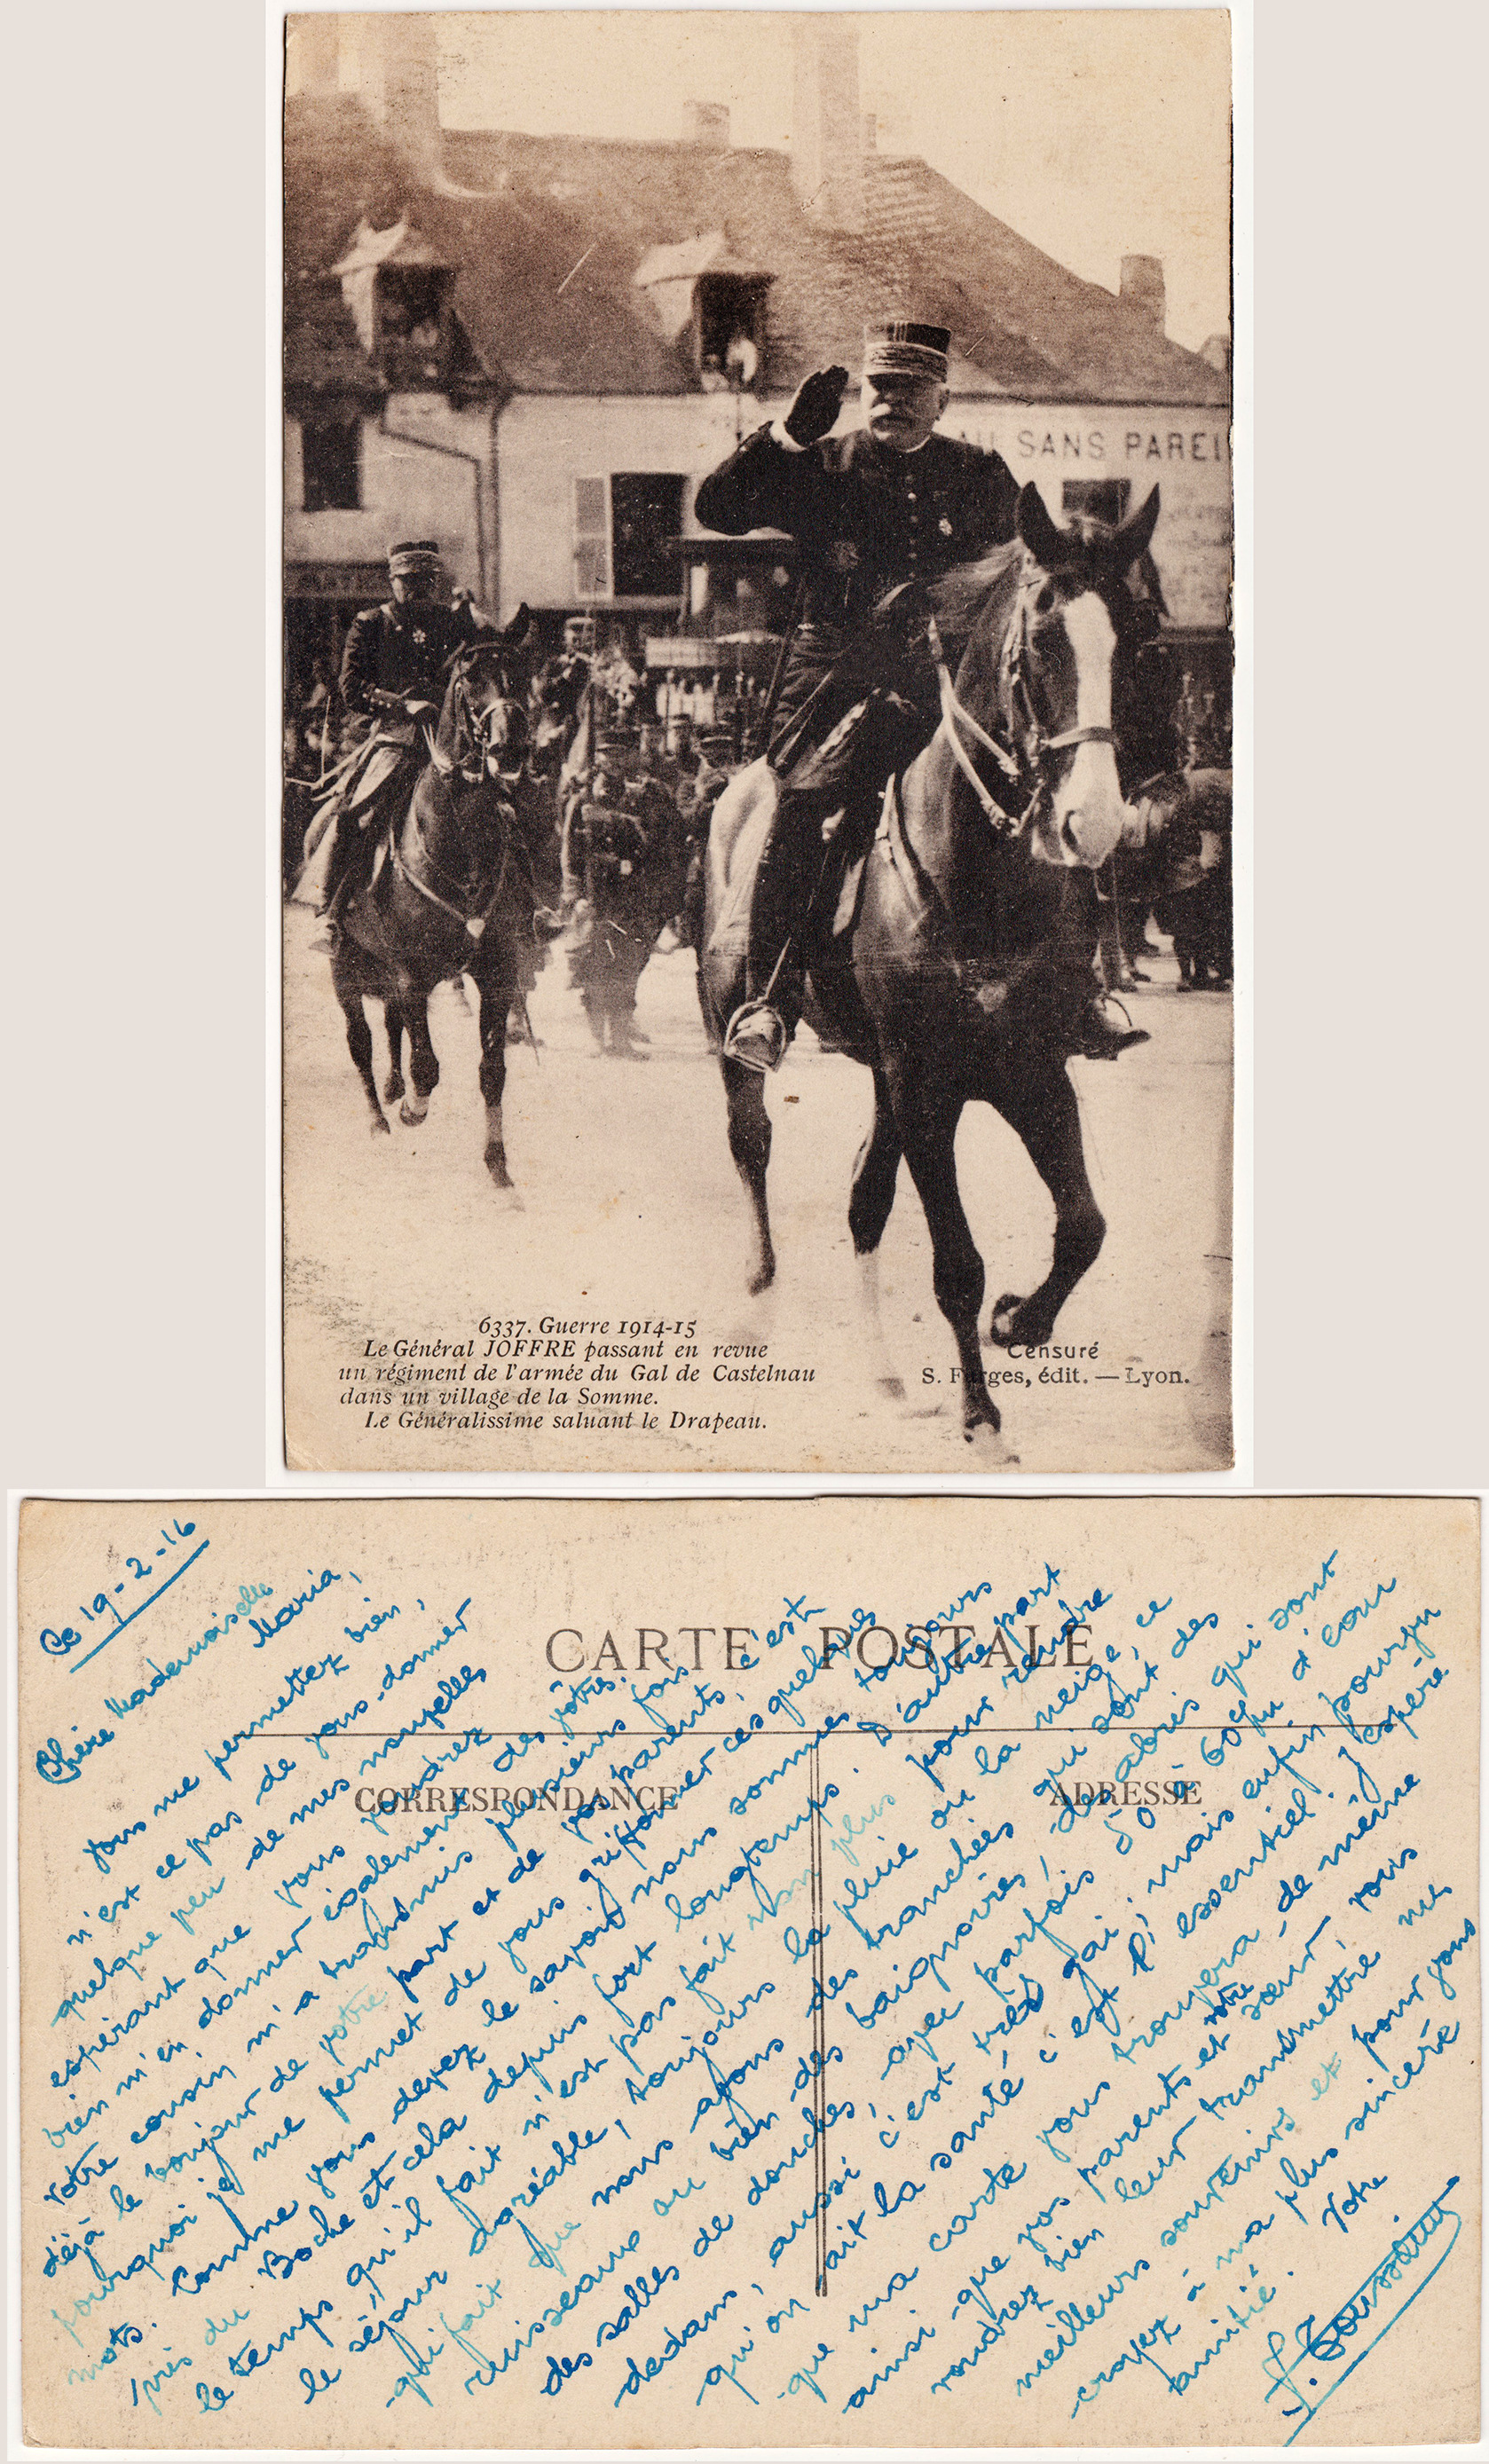 Cartes postales patriotiques françaises de la Grande Guerre - recensement - Page 3 C5bd32260f30e7efd80c7b192aa6131eea870e85